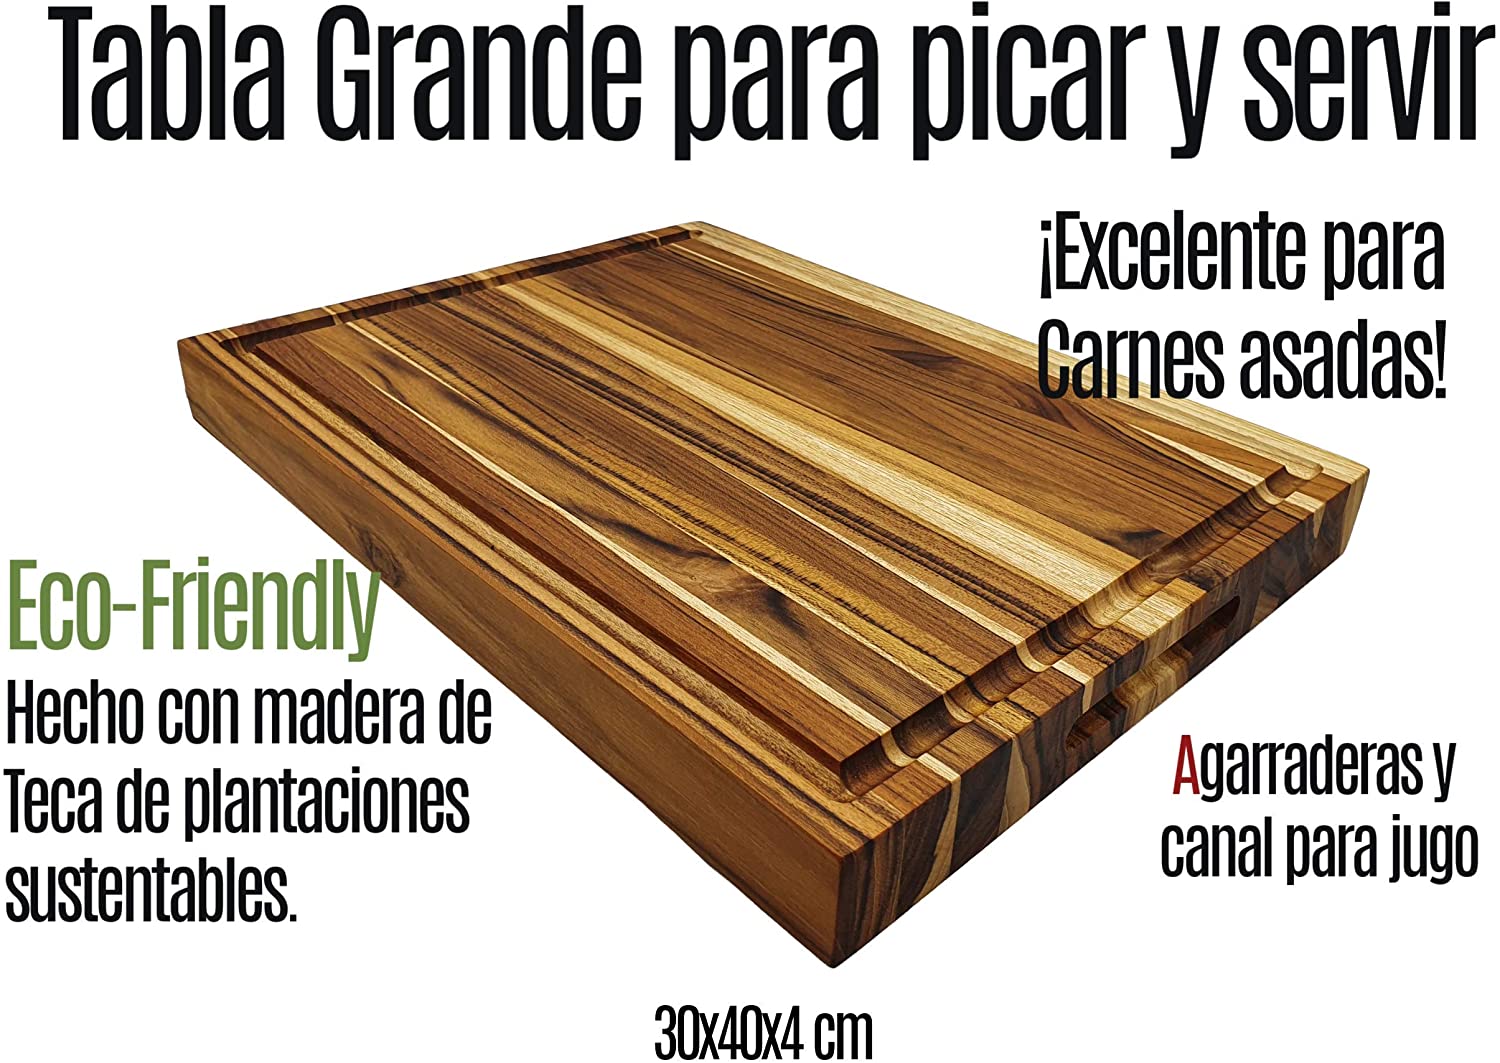 TABLA DE MADERA TECA RECTANGULAR CON AGARRADERA PARA PICAR/SERVIR